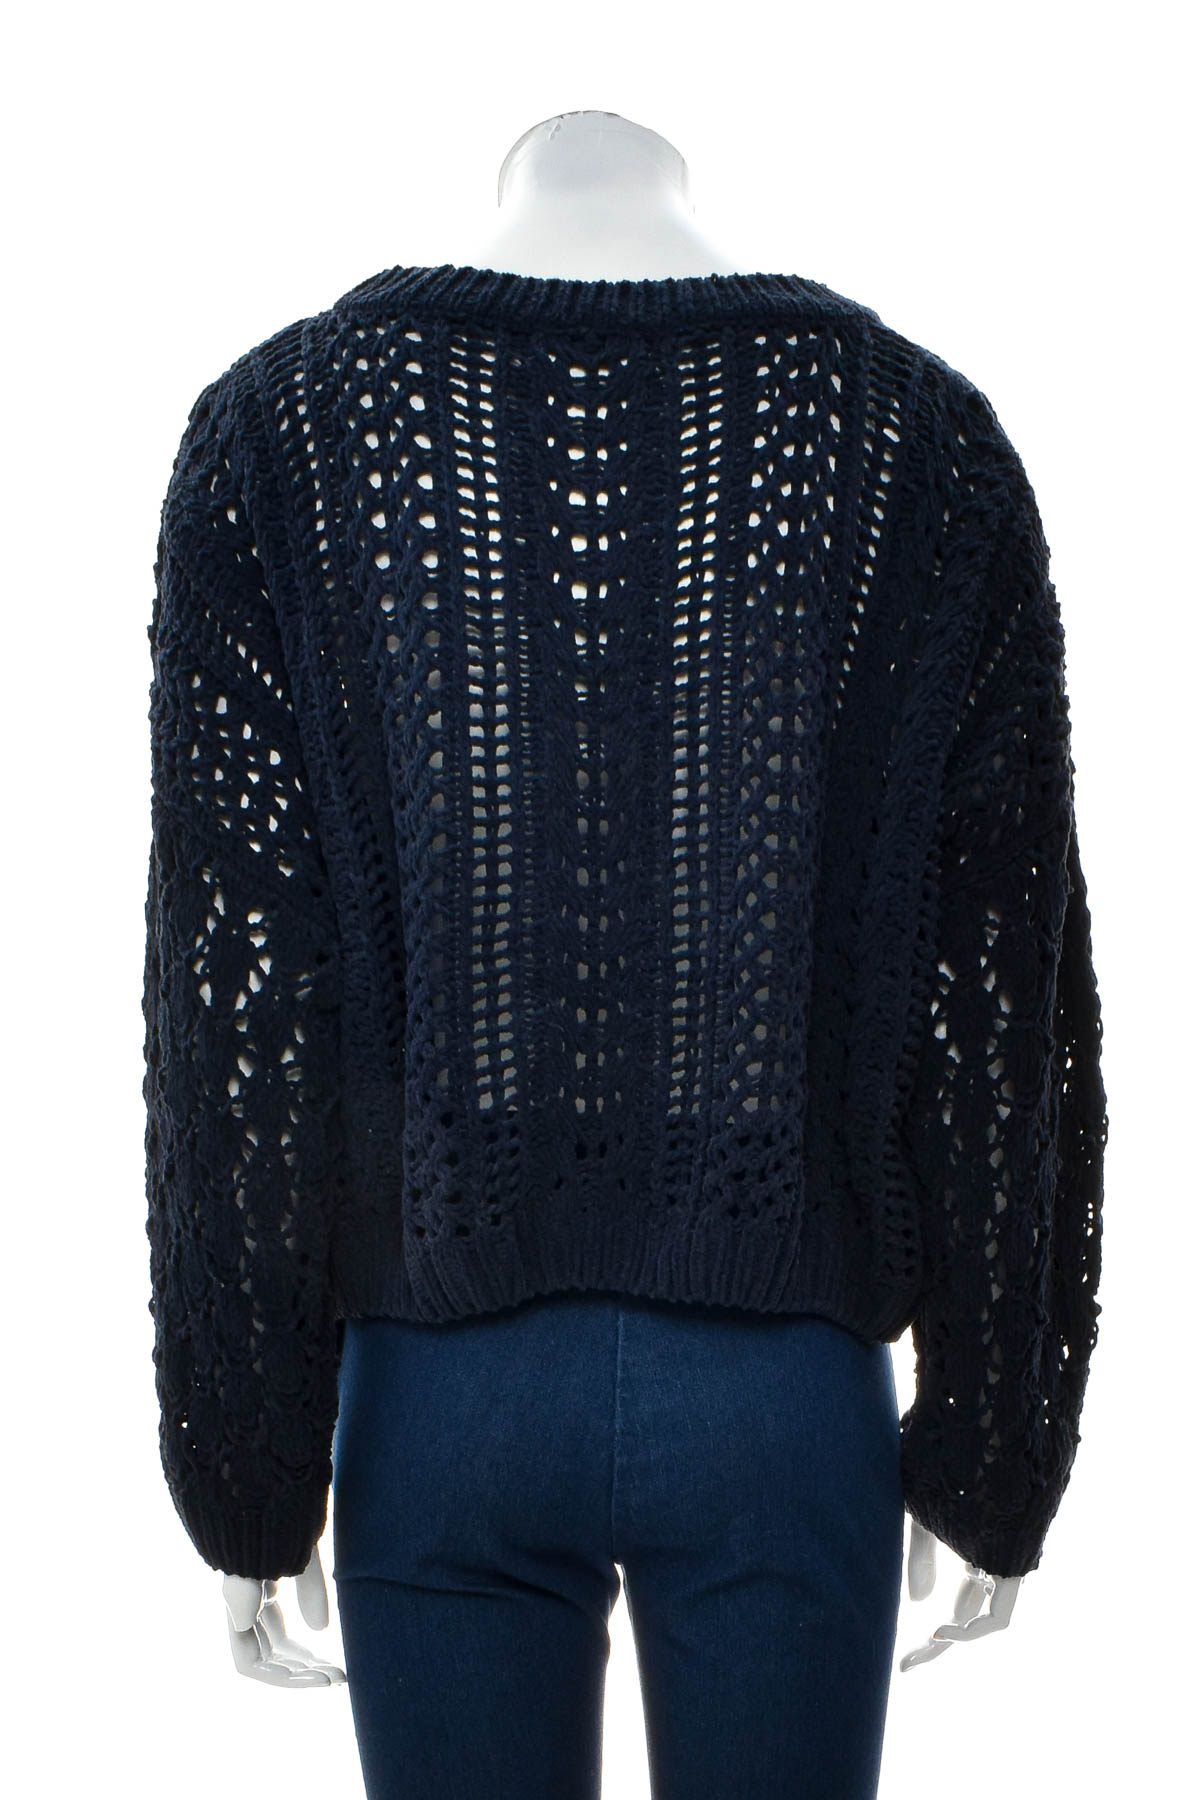 Дамски пуловер - Ally fashion - 1